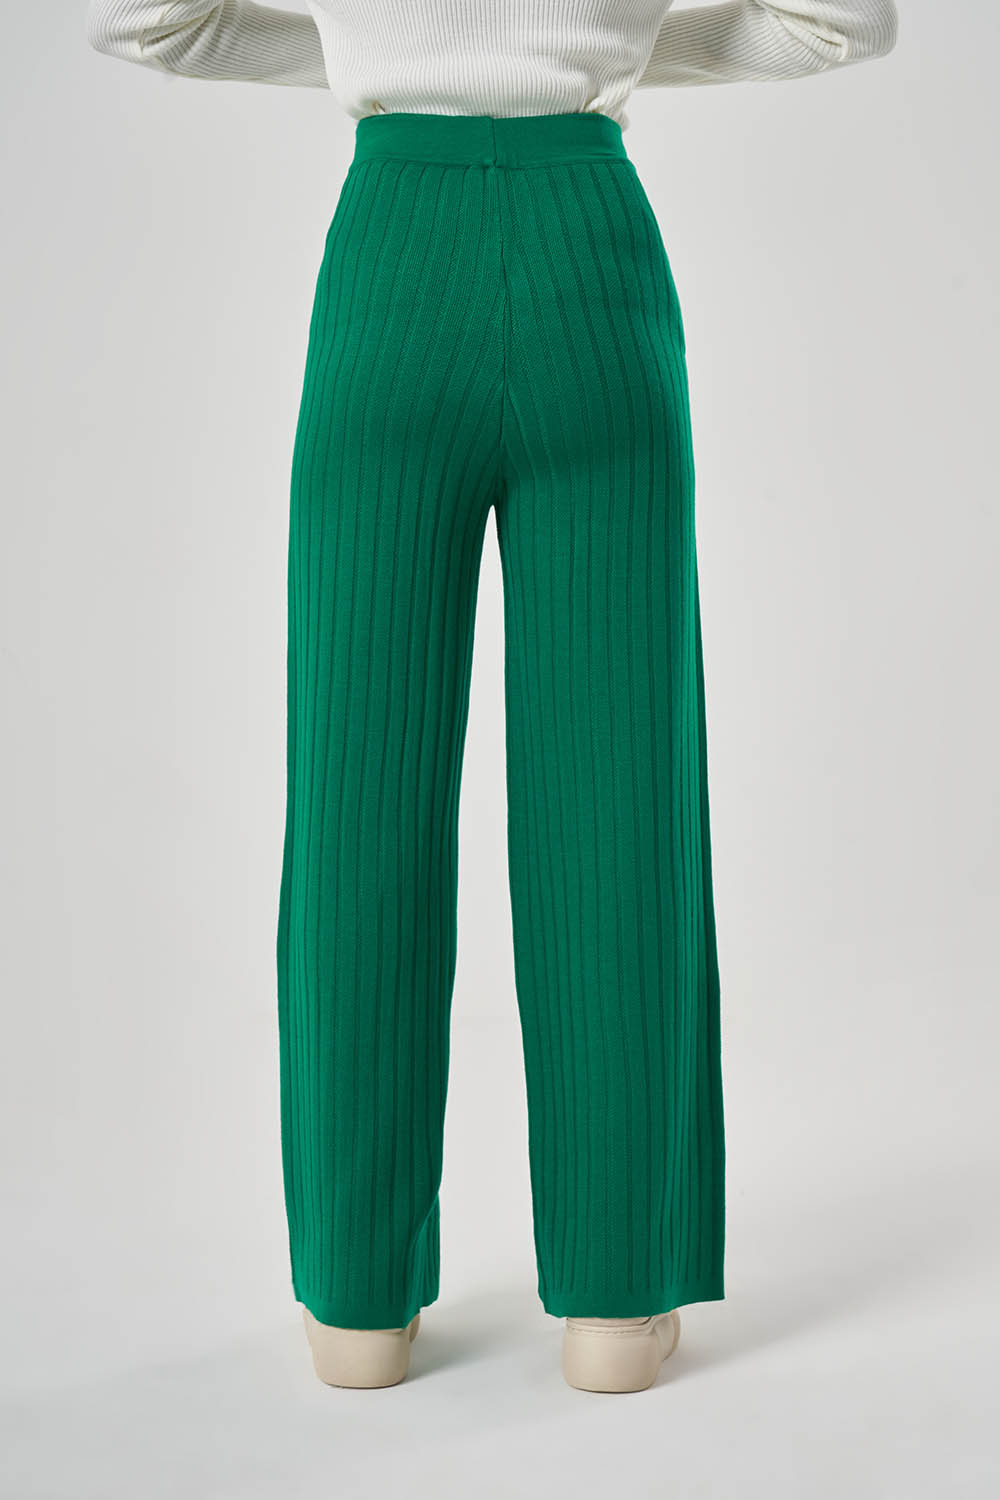 Fitilli Akrilik Yeşil Pantolon